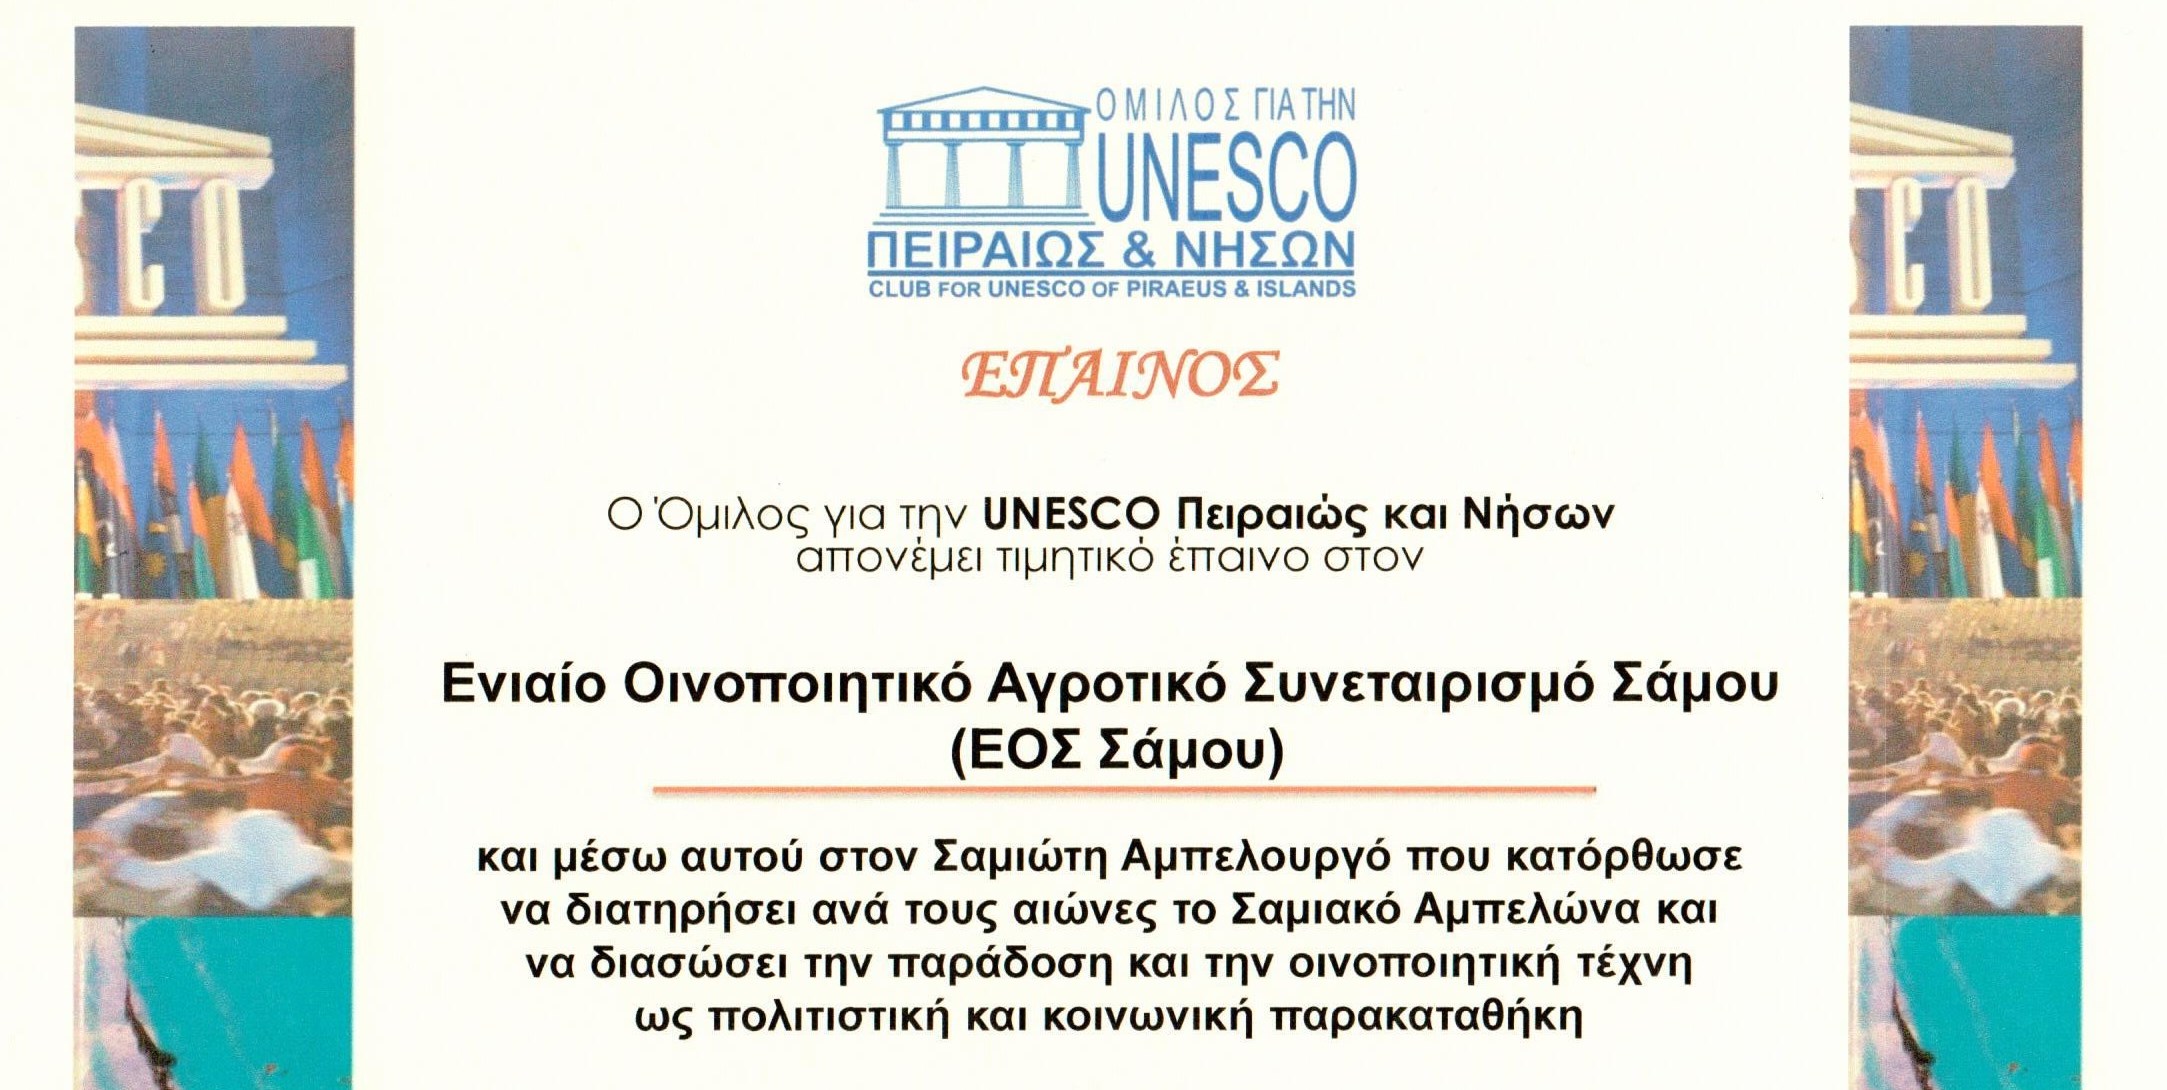 Βραβεύτηκε ο ΕΟΣ Σάμου από την UNESCO